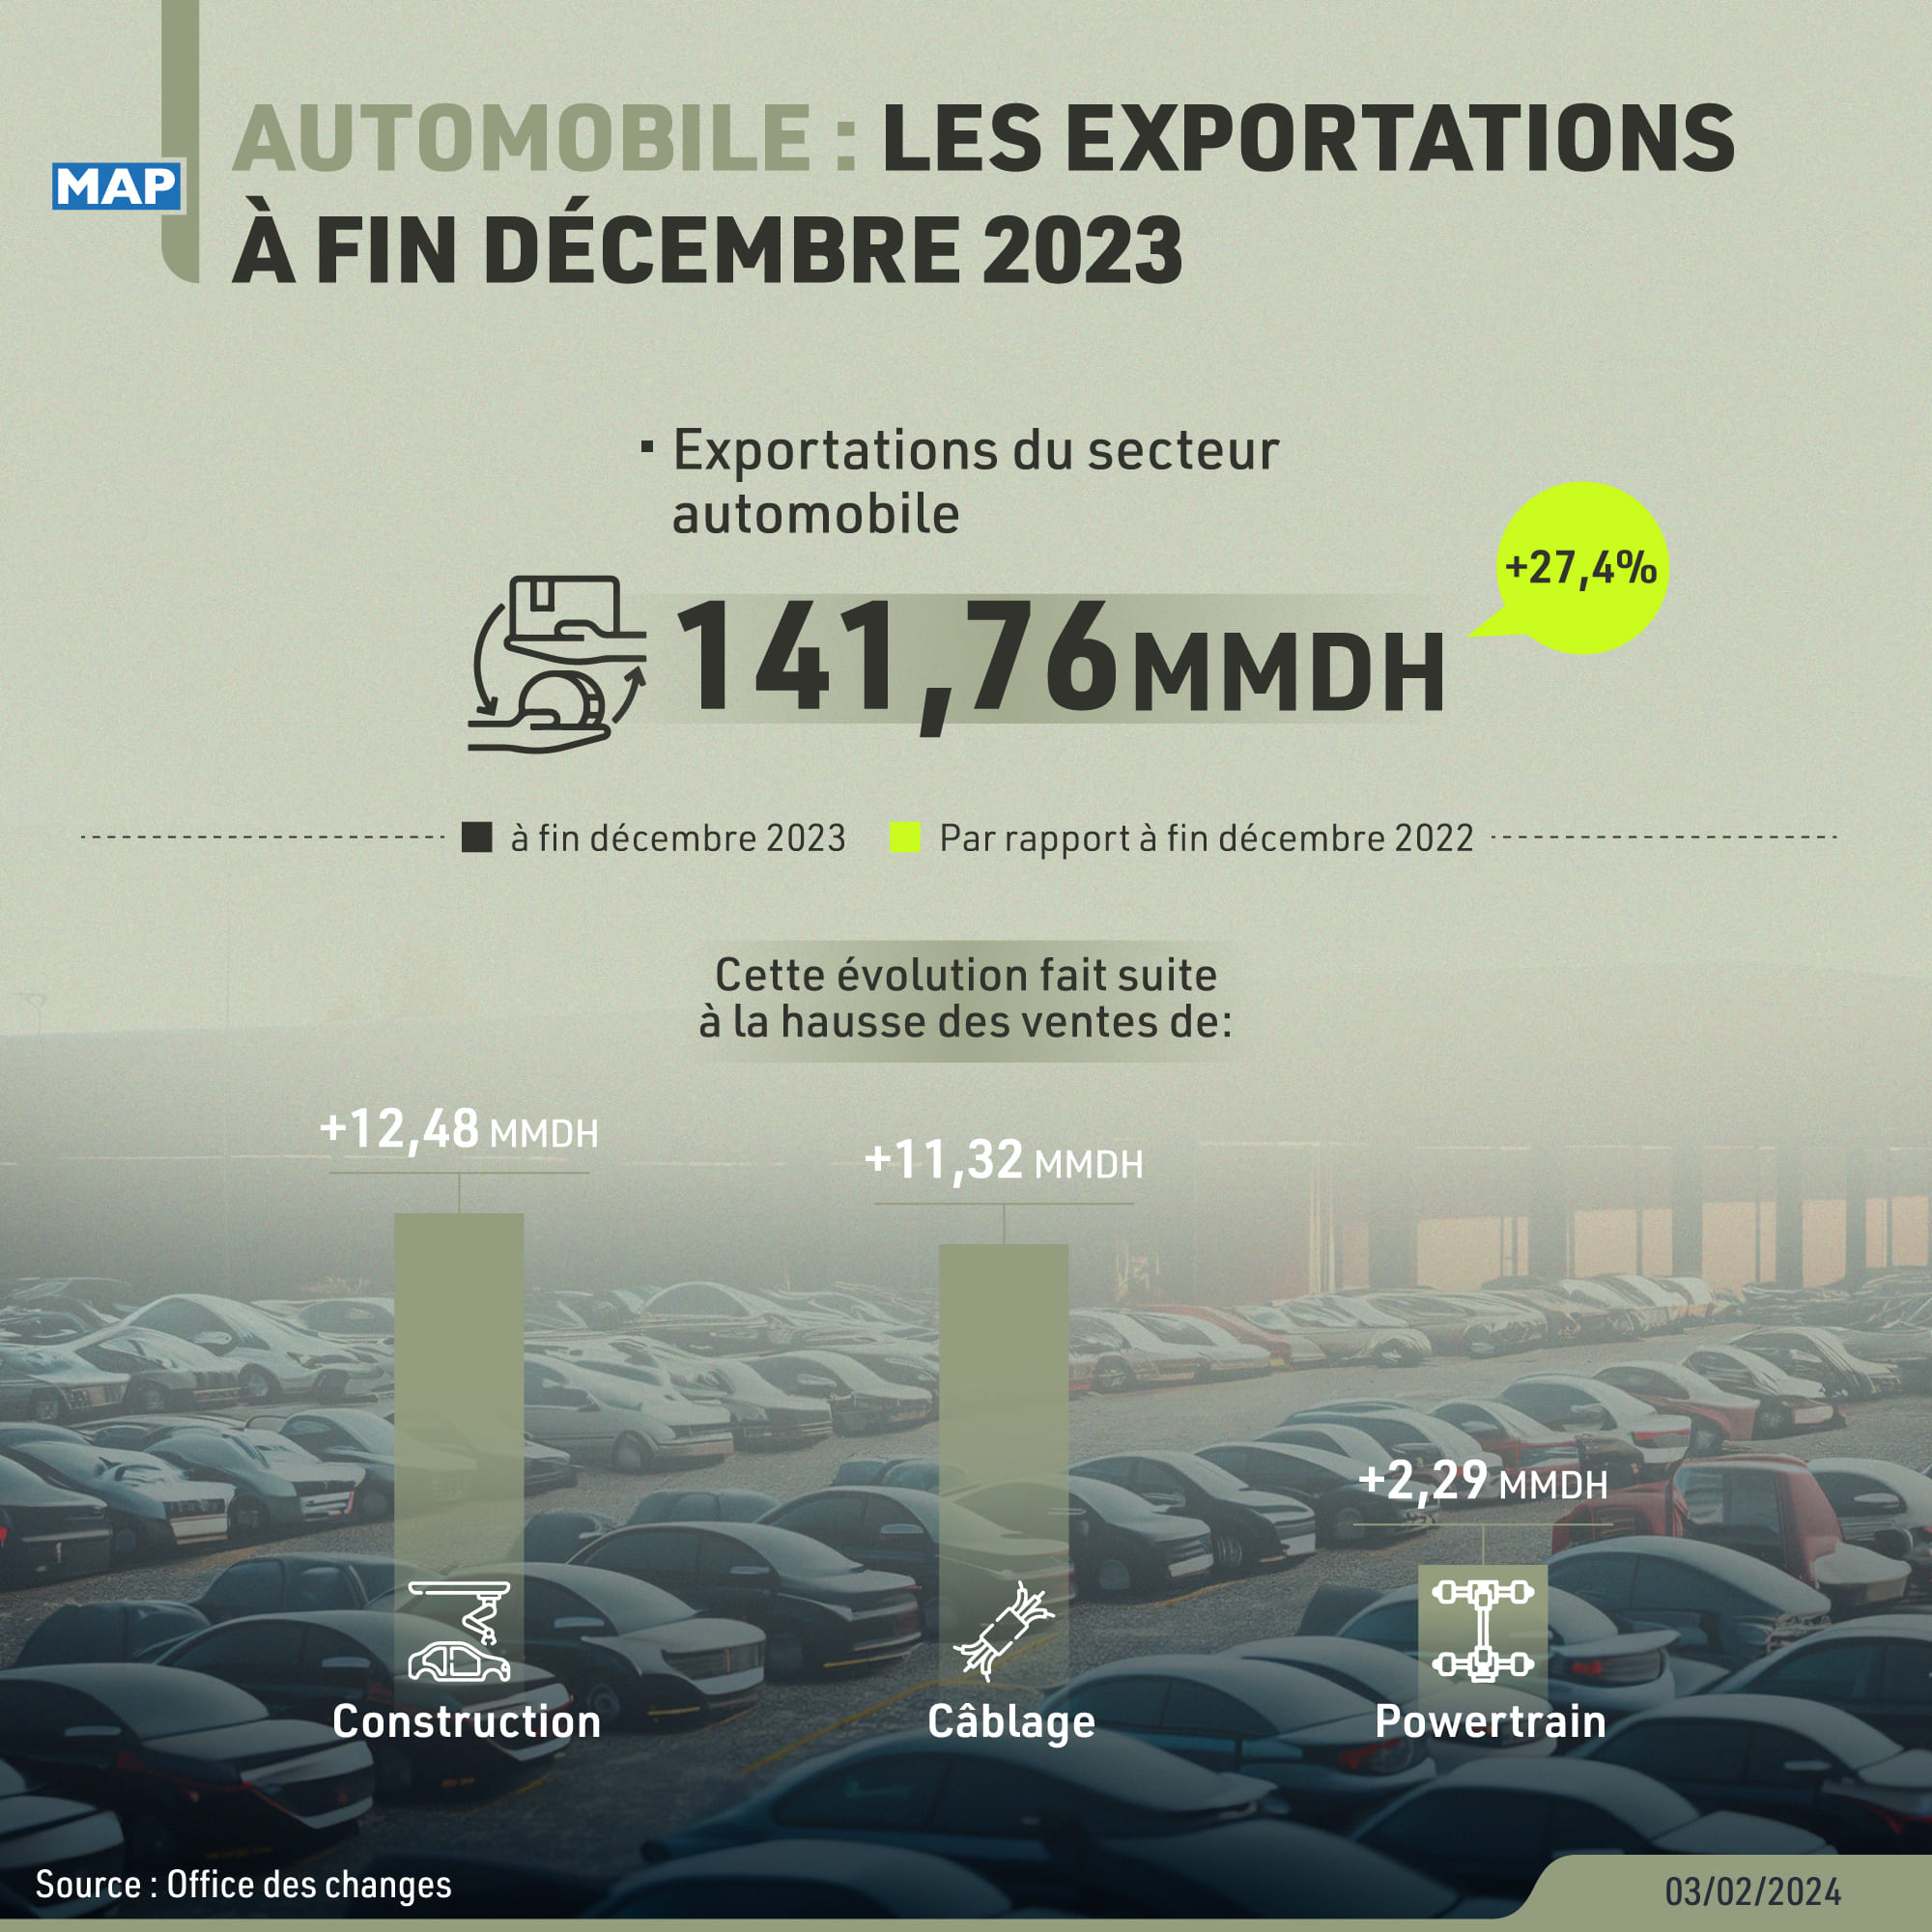 Automobile : les exportations grimpent de 27,4% à fin décembre 2023